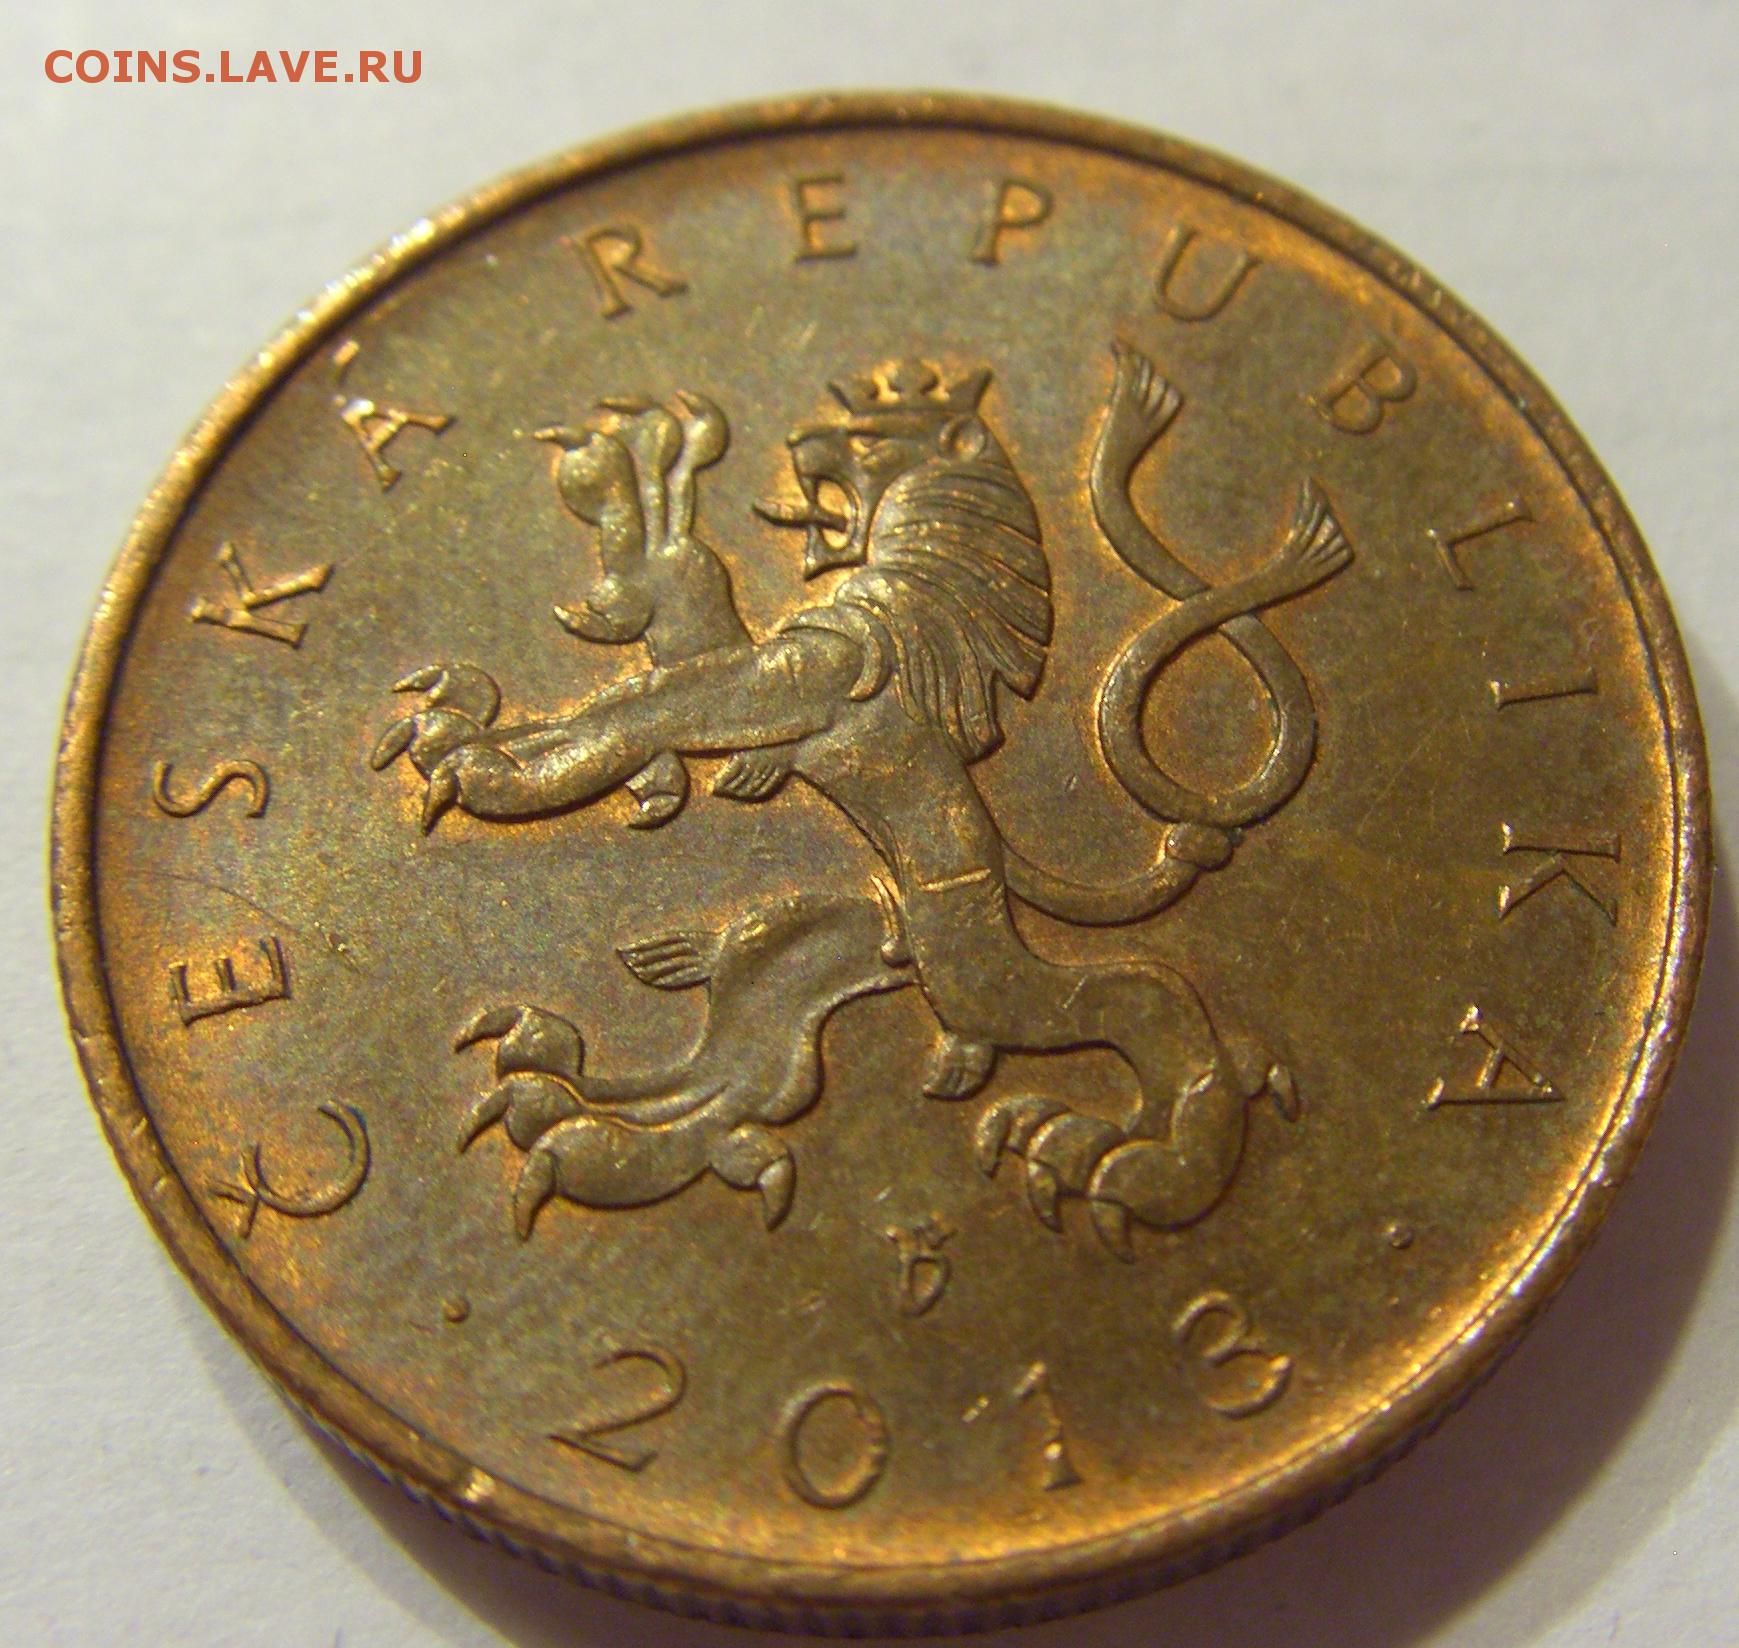 35 российских рублей. Чехия 2000 крон 1999.